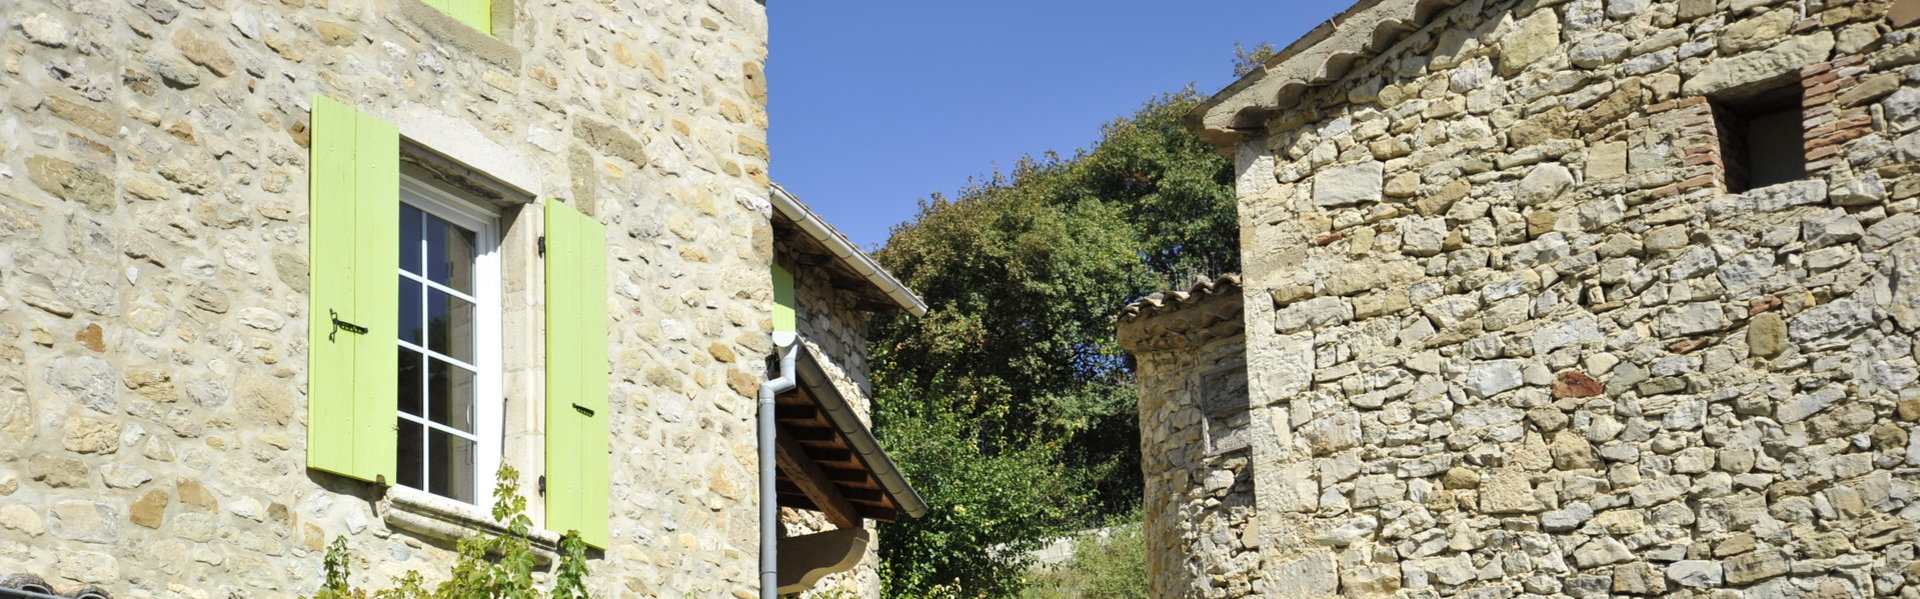 Service de l’eau - Commune de Bouvières - Département de la Drôme